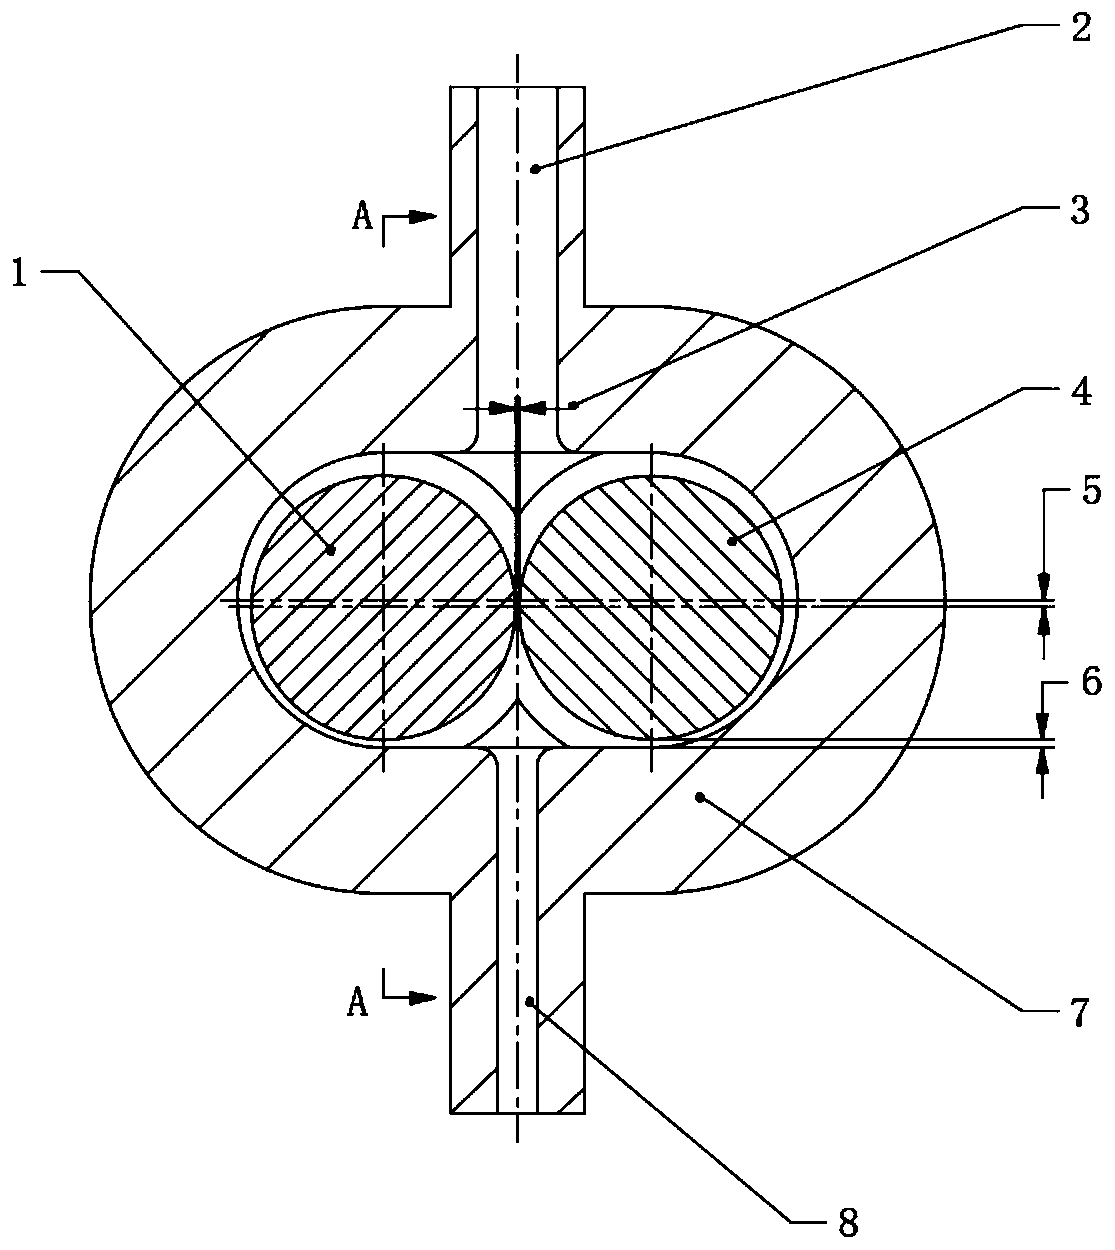 Non-impeller rotor valveless pump for artificial heart